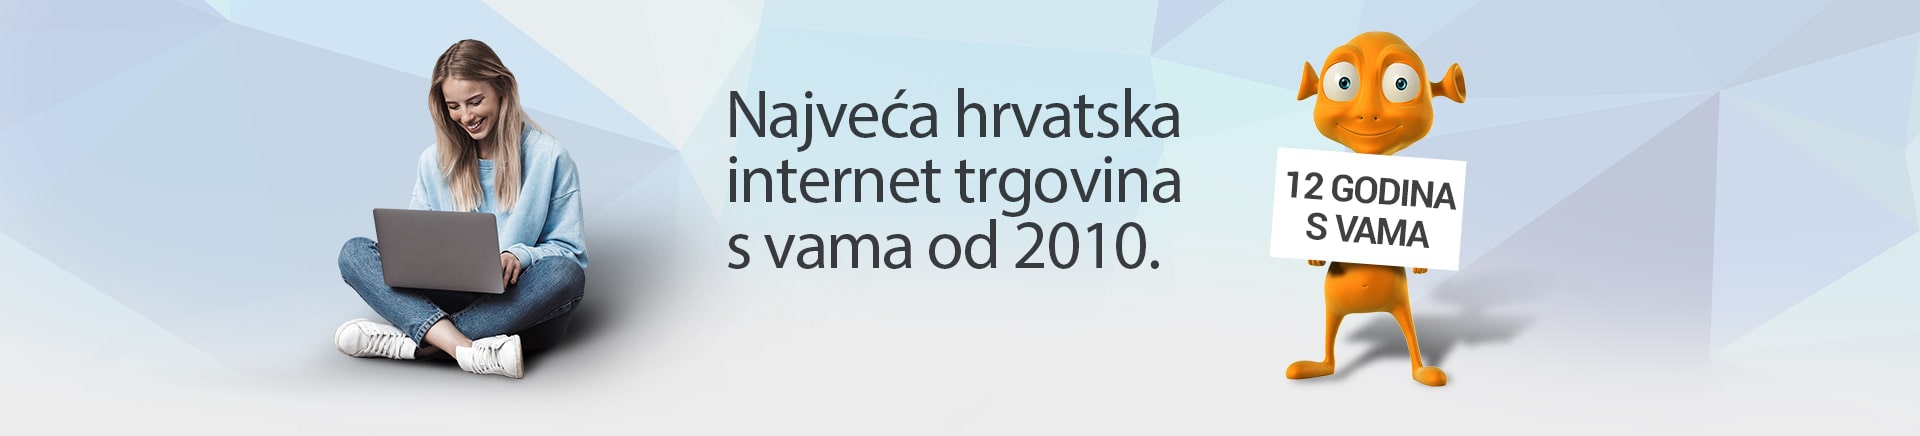 NajveÄa hrvatska internet trgovina s vama od 2010